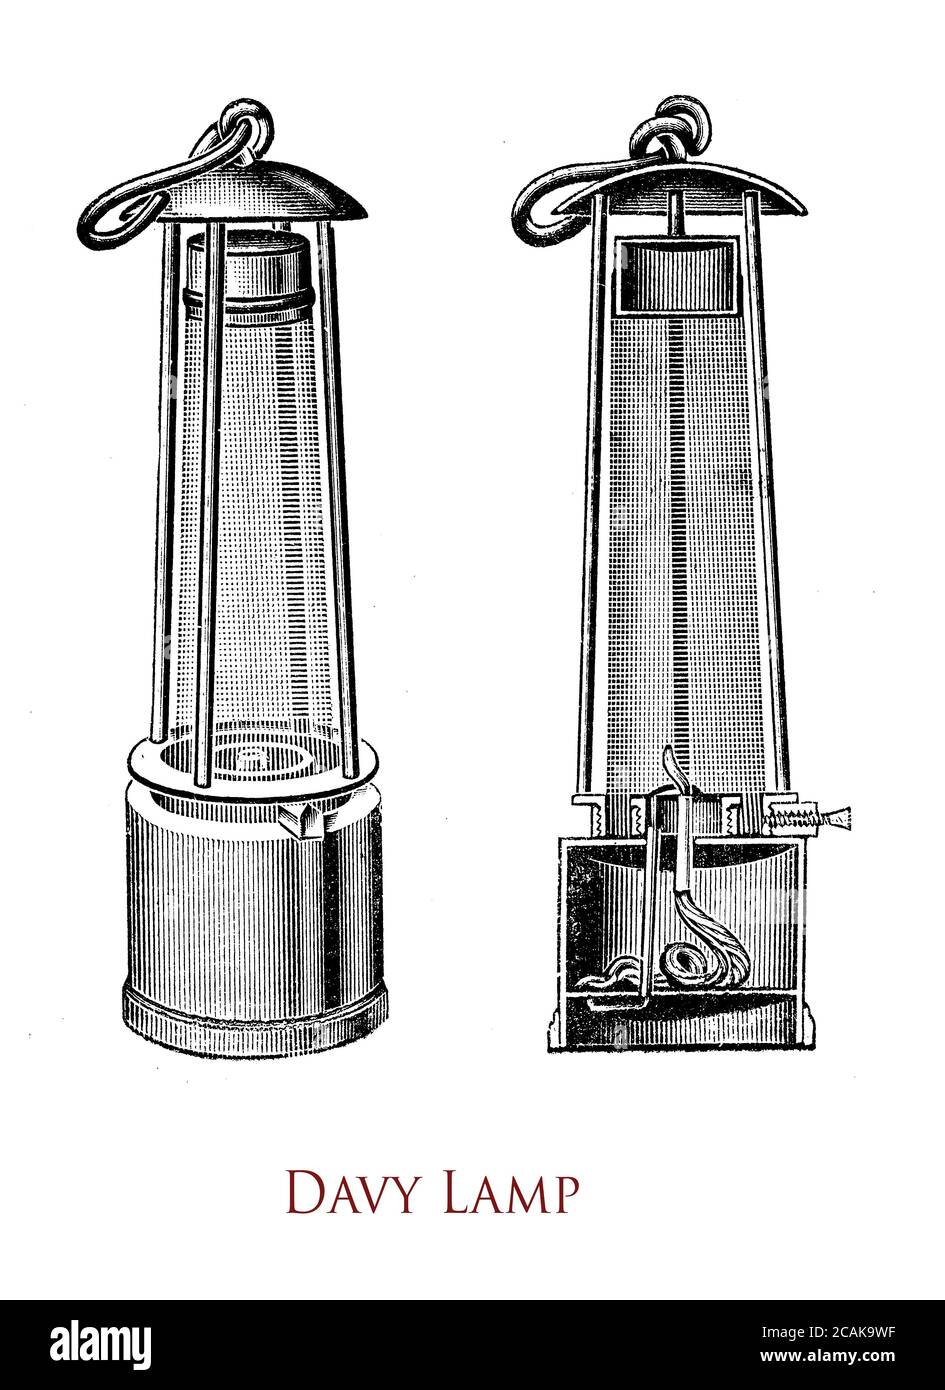 Davy LAMP è una lampada di sicurezza per l'uso in atmosfere infiammabili come le miniere di carbone, inventata nel 1815 da Sir Humphry Davy. È costituito da una lampada a stoppino con la fiamma prodotta dall'olio vegetale racchiusa all'interno di un retino a rete. Foto Stock